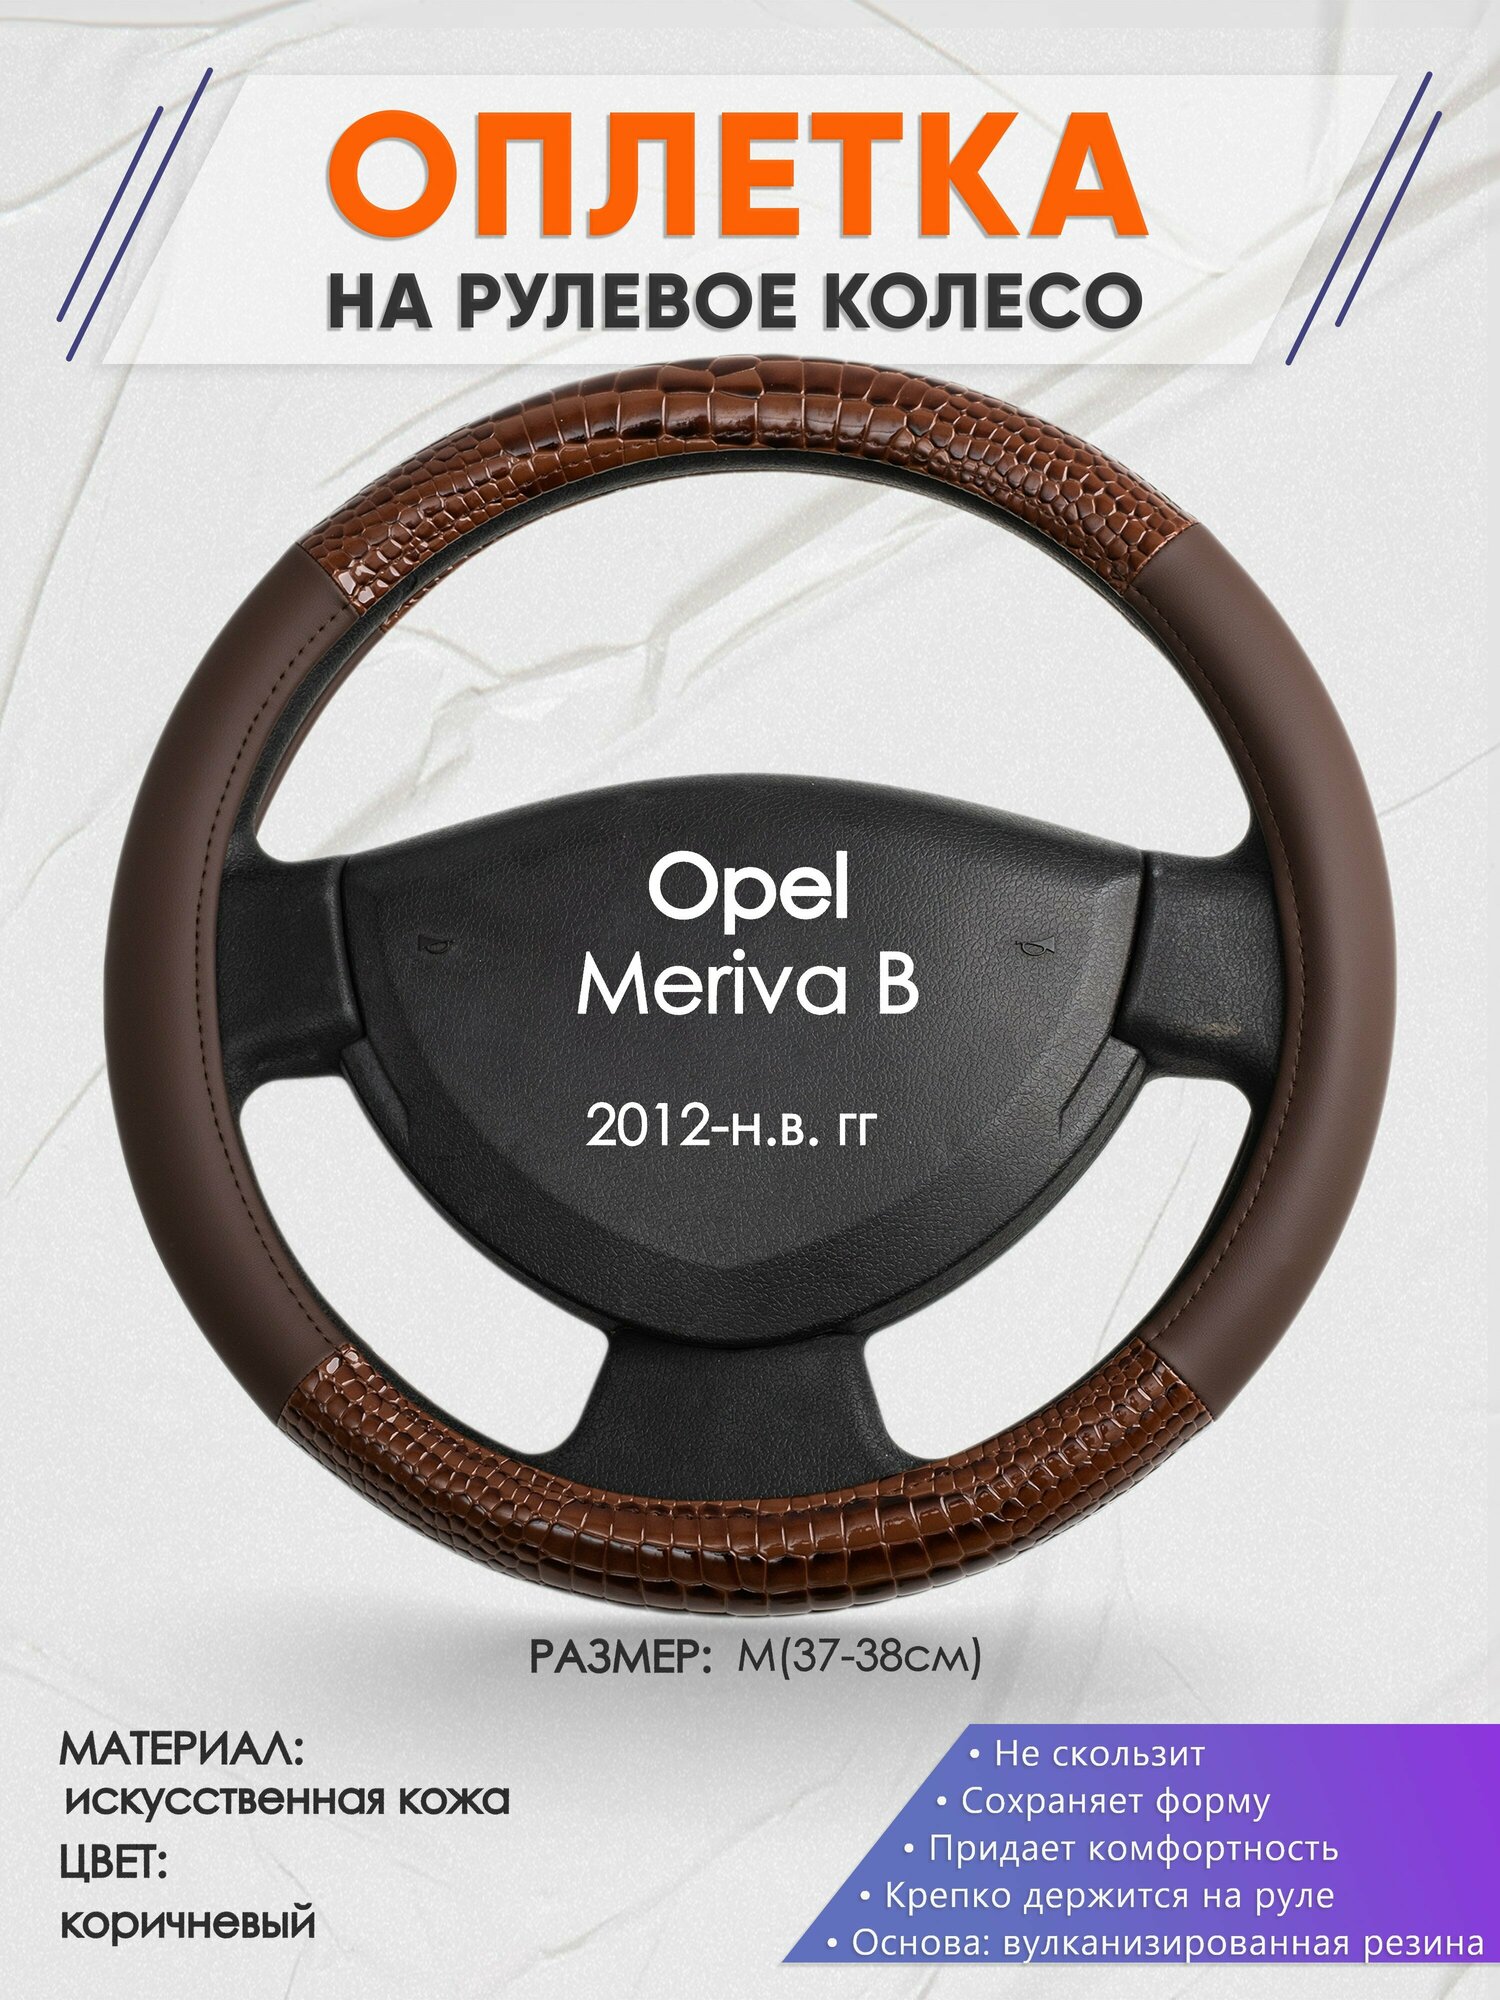 Оплетка на руль для Opel Meriva В(Опель Мерива Б) 2012-н. в, M(37-38см), Искусственная кожа 85